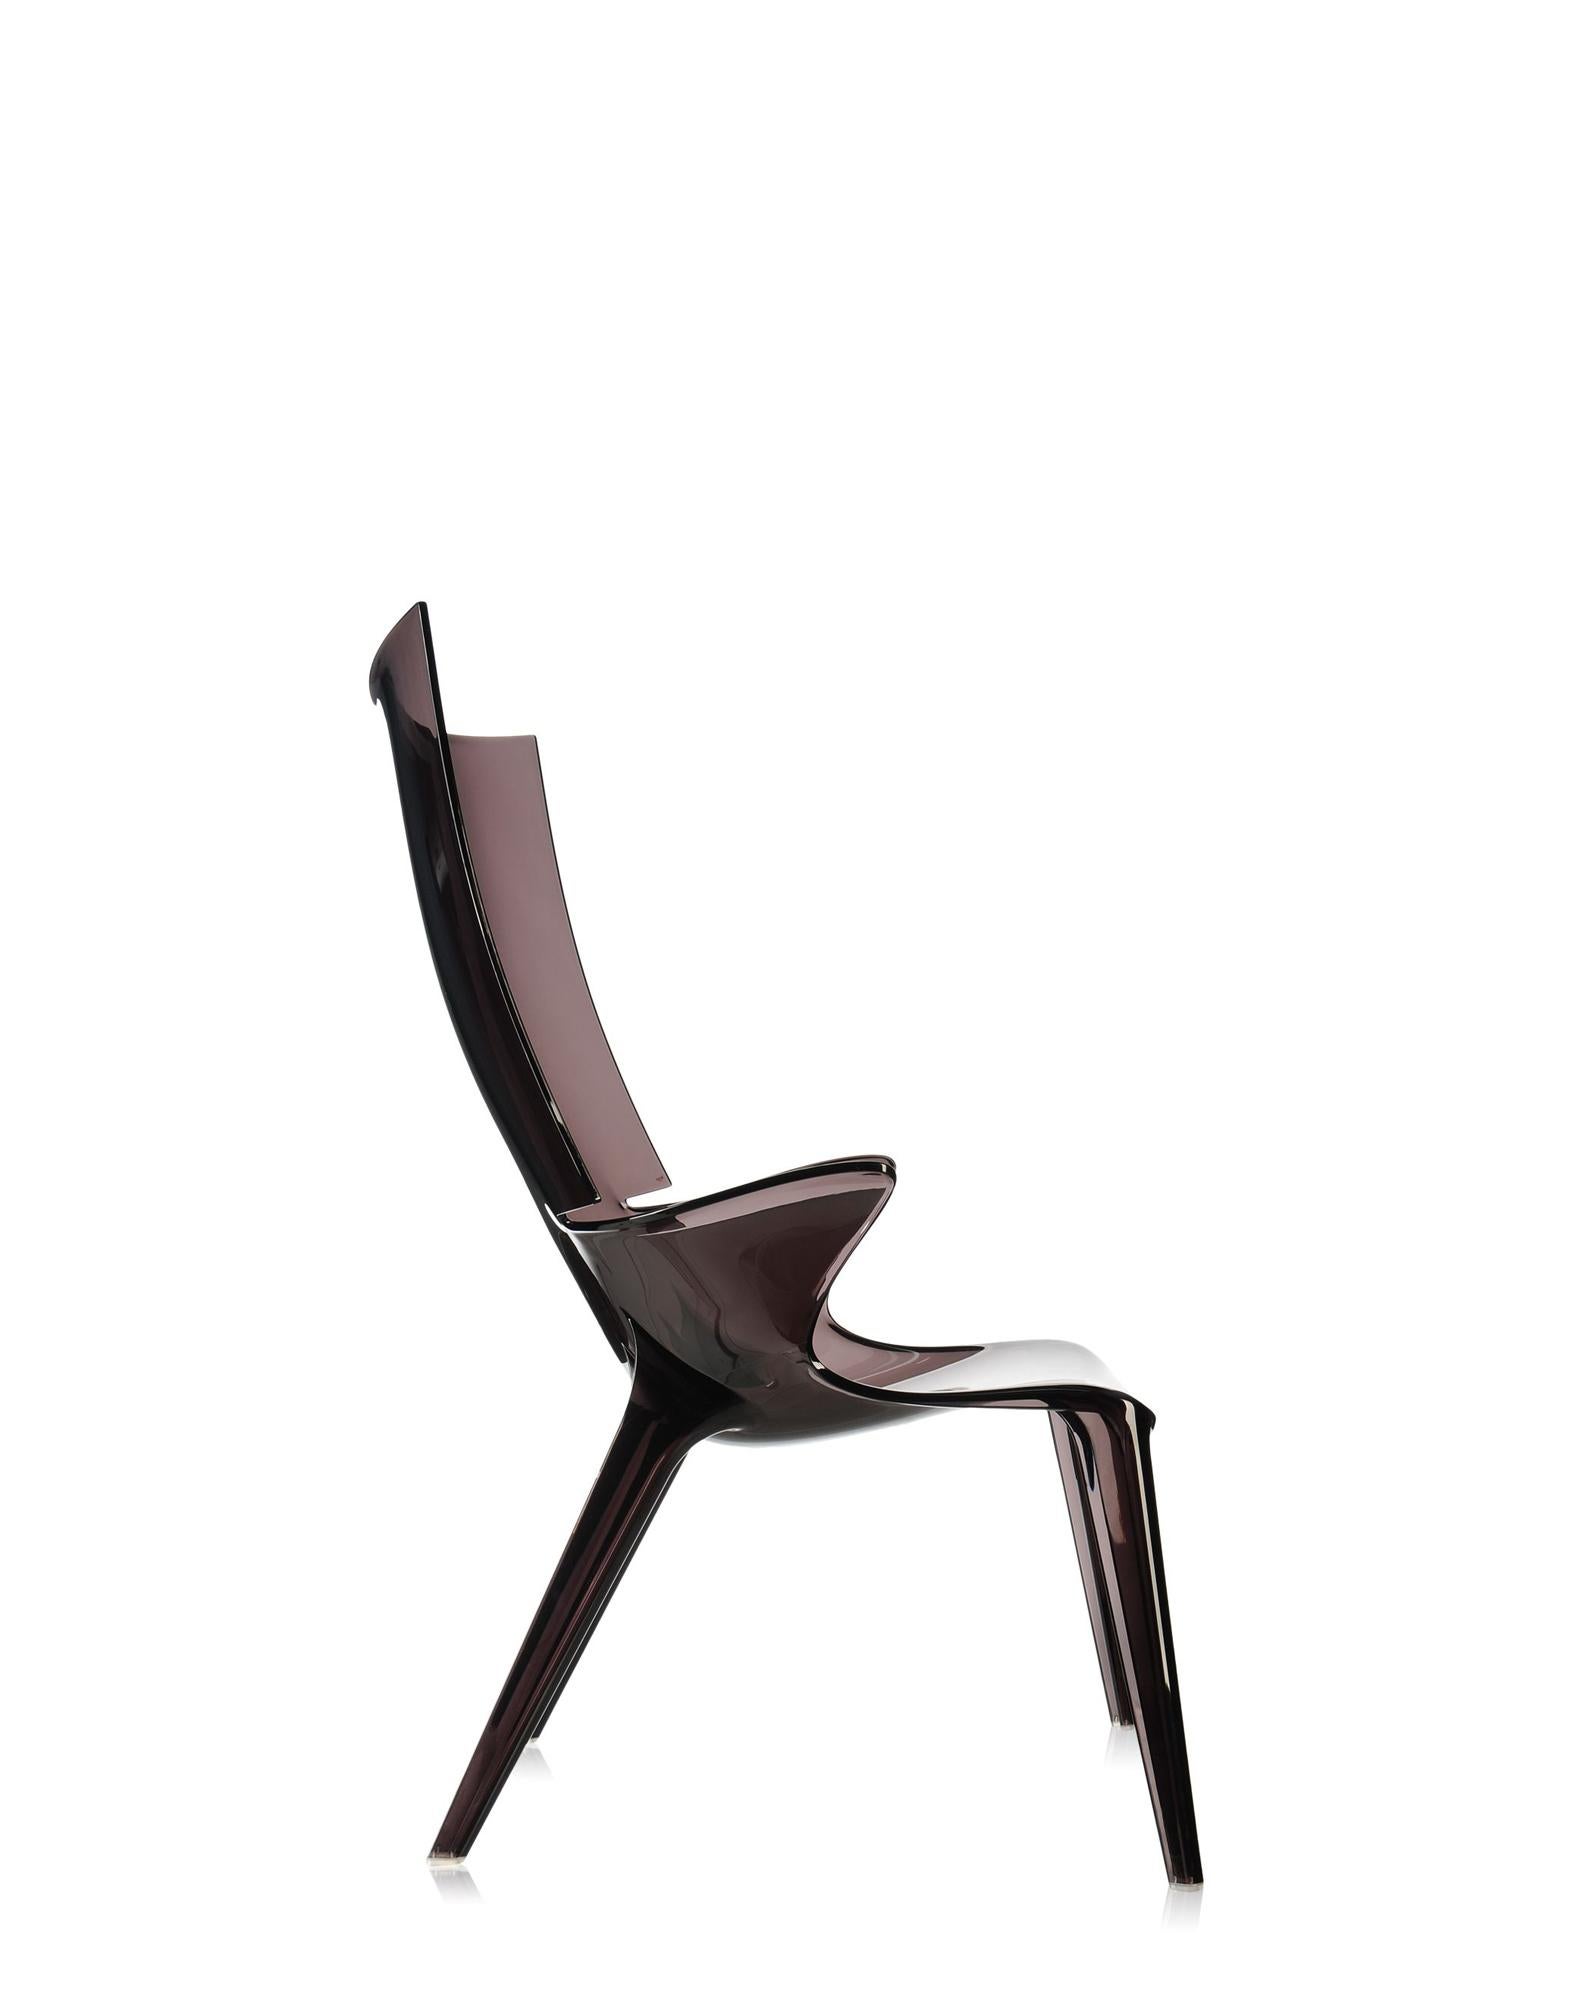 Die von Philippe Starck entworfene Uncle Collection wird durch den Sessel Uncle Jim ergänzt. Der Sessel greift die Linien und die Geschmeidigkeit von Uncle Jack auf und eignet sich für eine breite Palette von Einrichtungsbedürfnissen.

Hergestellt